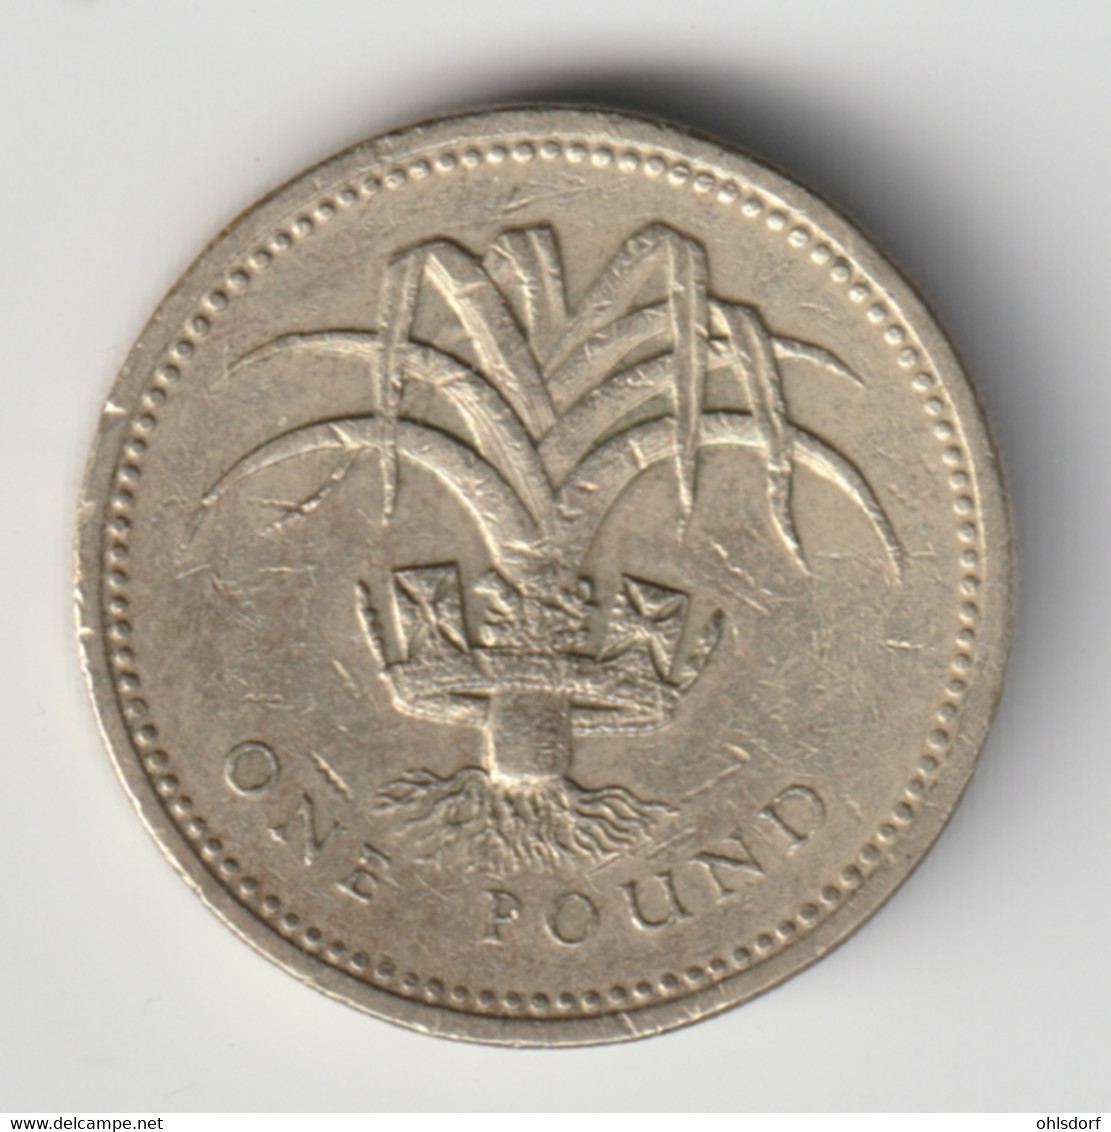 GREAT BRITAIN 1990: 1 Pound, KM 941 - 1 Pond